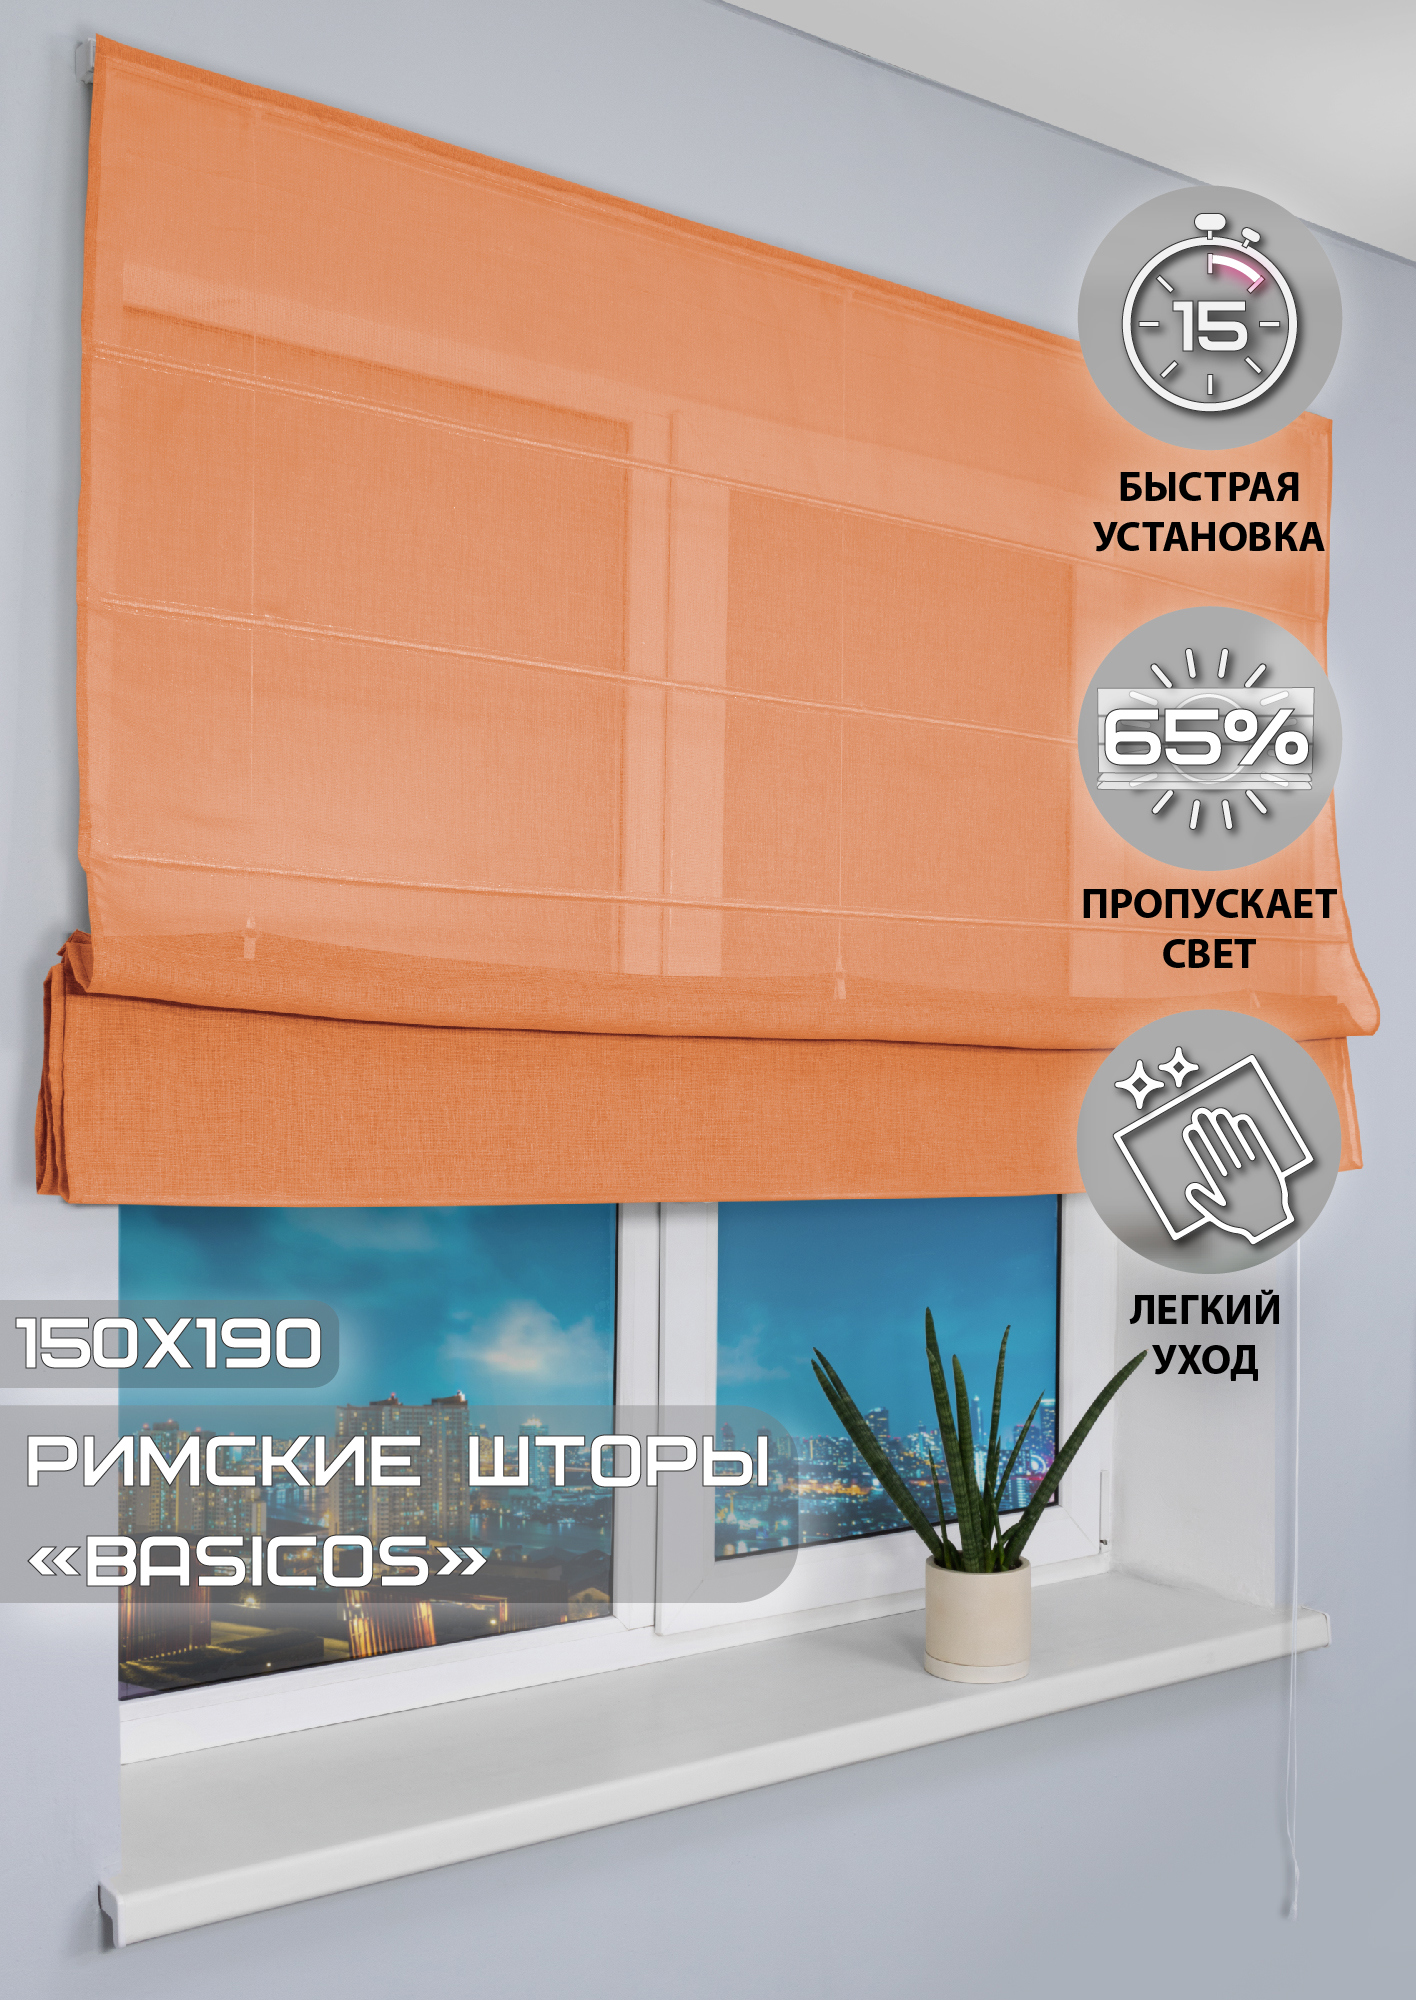 91002972 Римская штора "Basicos" 190x150 см цвет оранжевый STLM-0434241 ЭСКАР